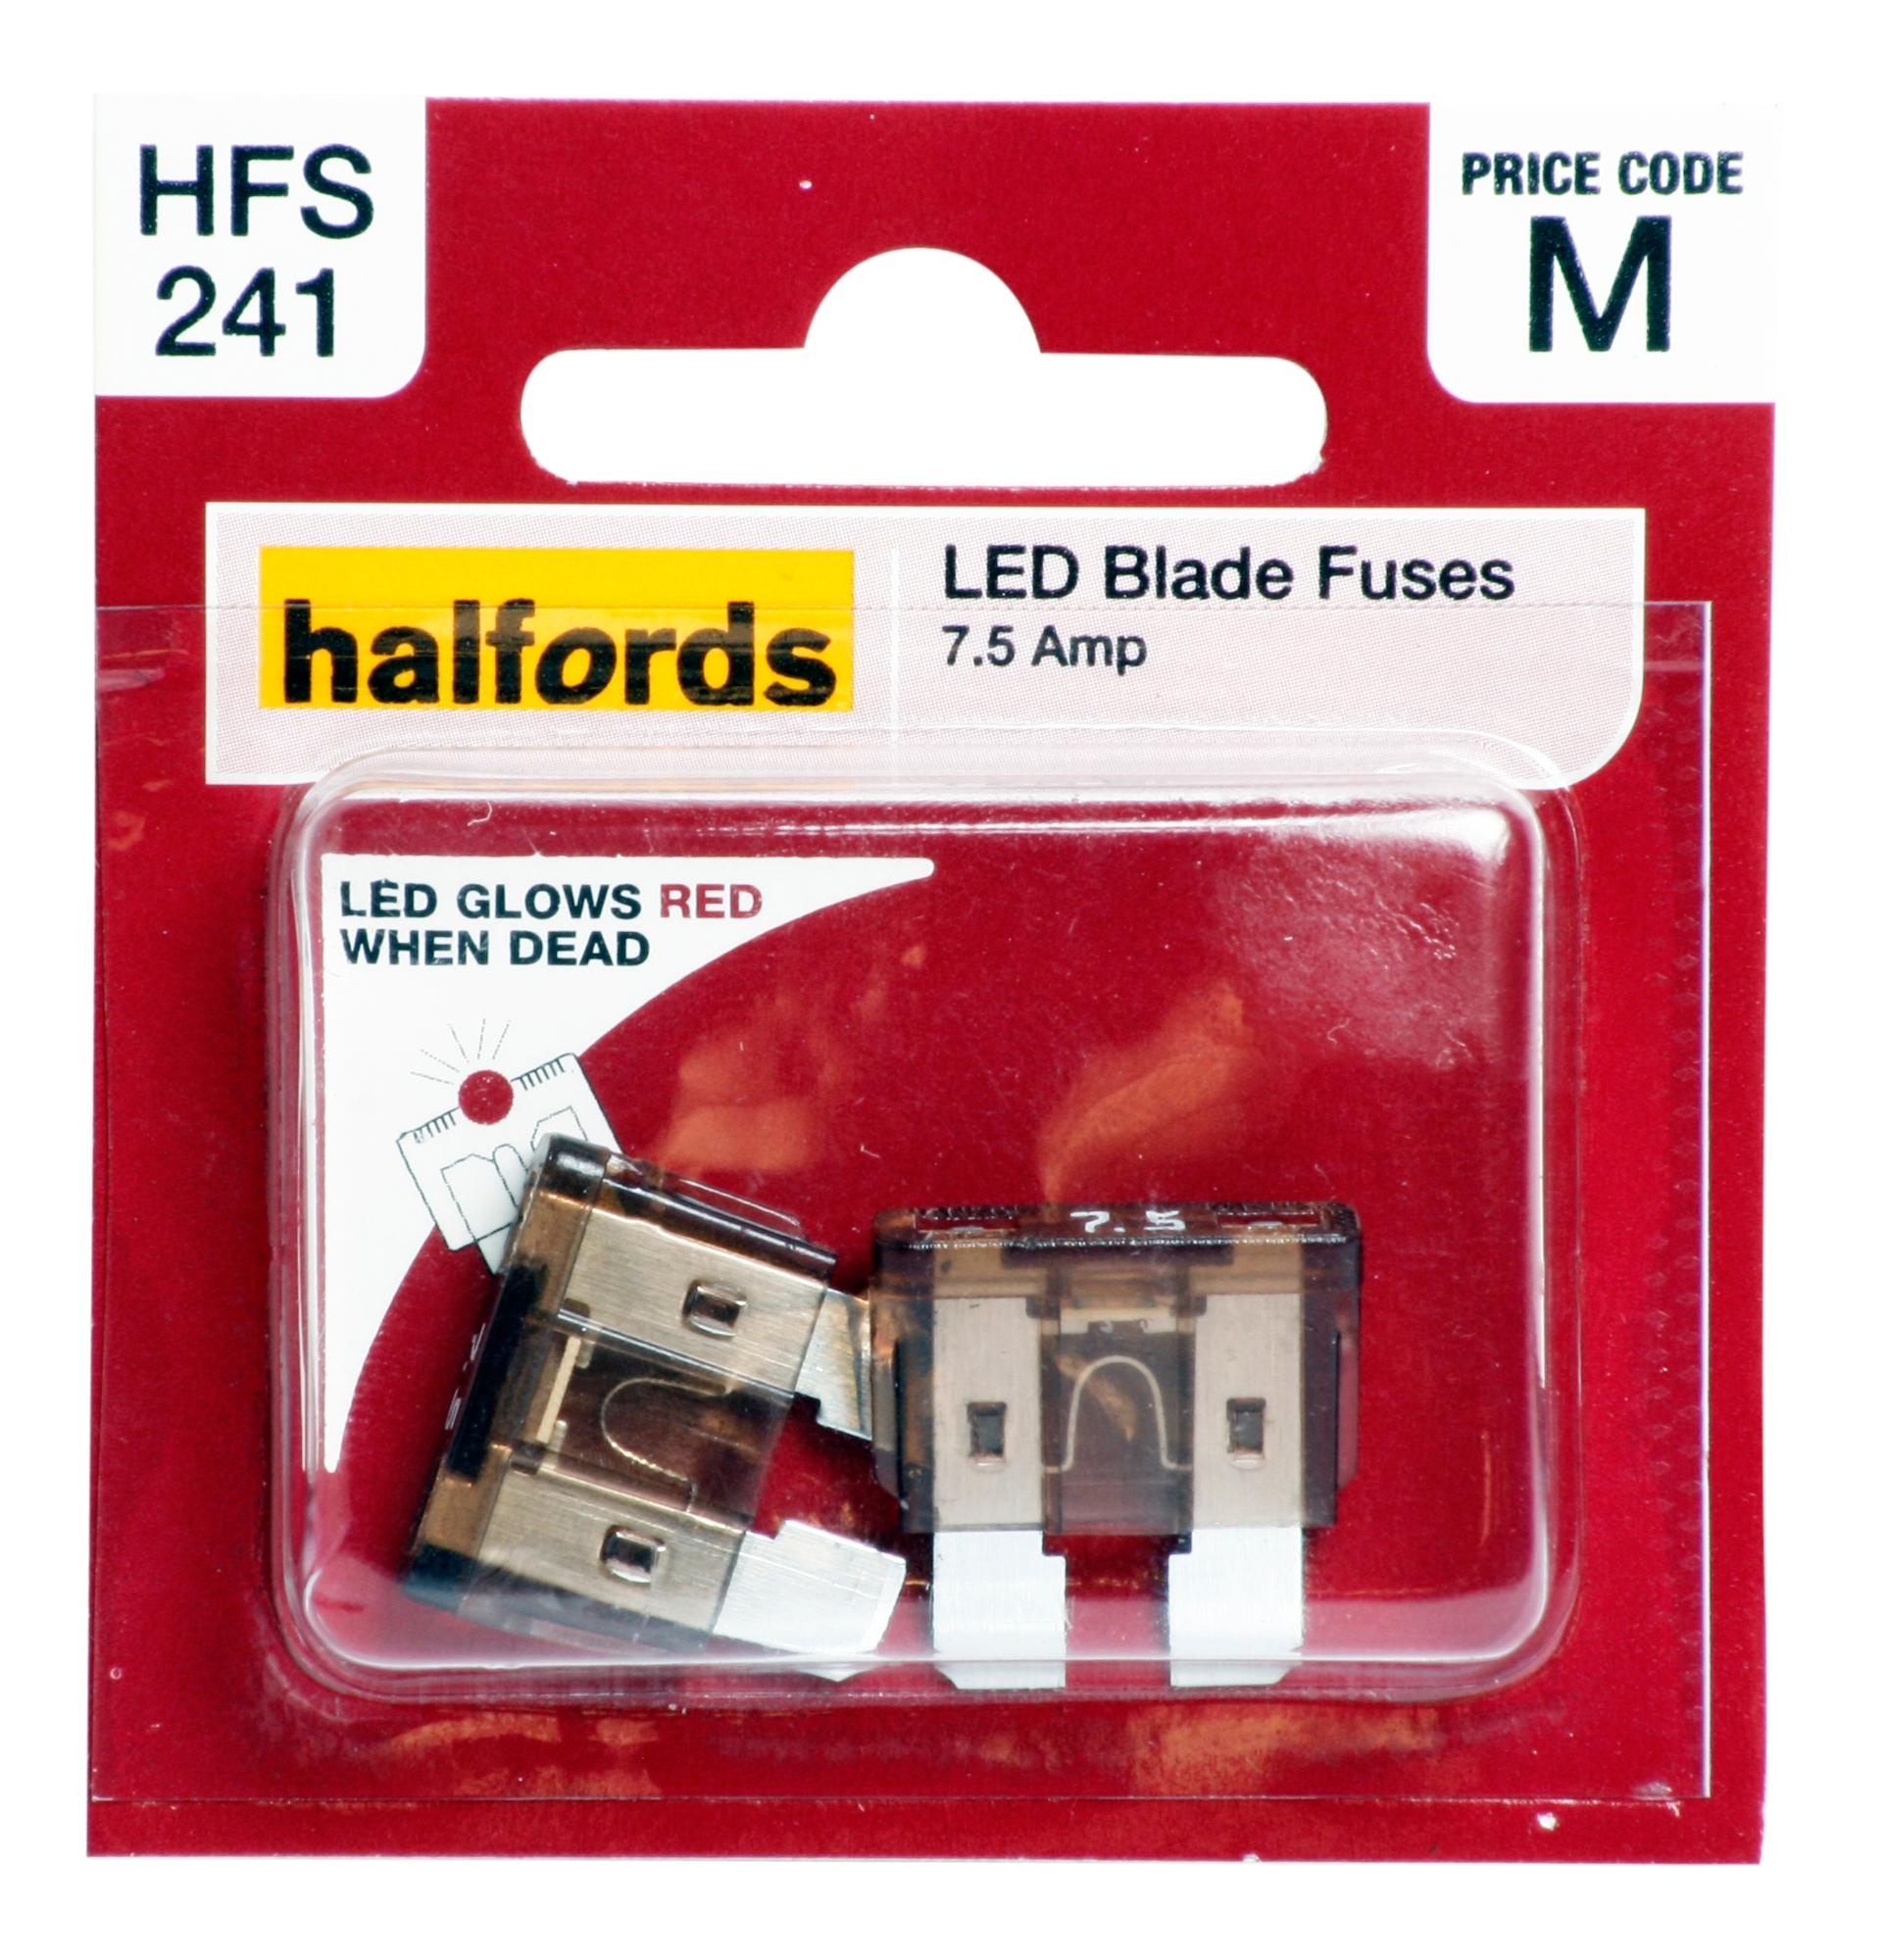 Halfords Led Blade Fuses 7.5 Amp (Hfs241)